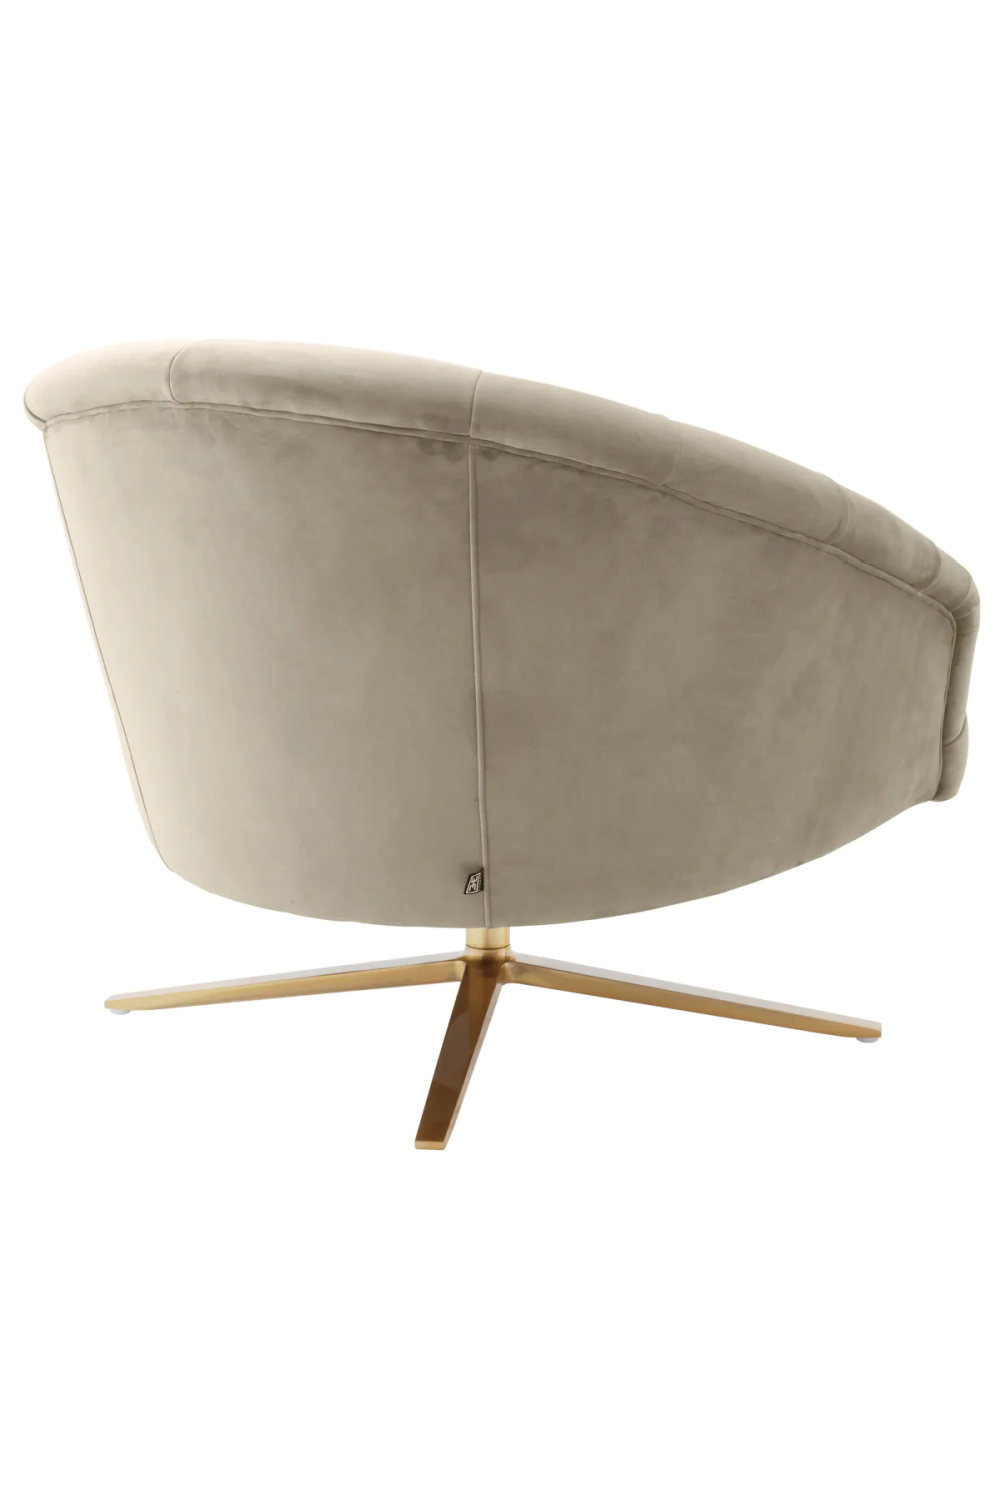 Beige Velvet Tufted Swivel Chair | Eichholtz Gardner | Oroa.com